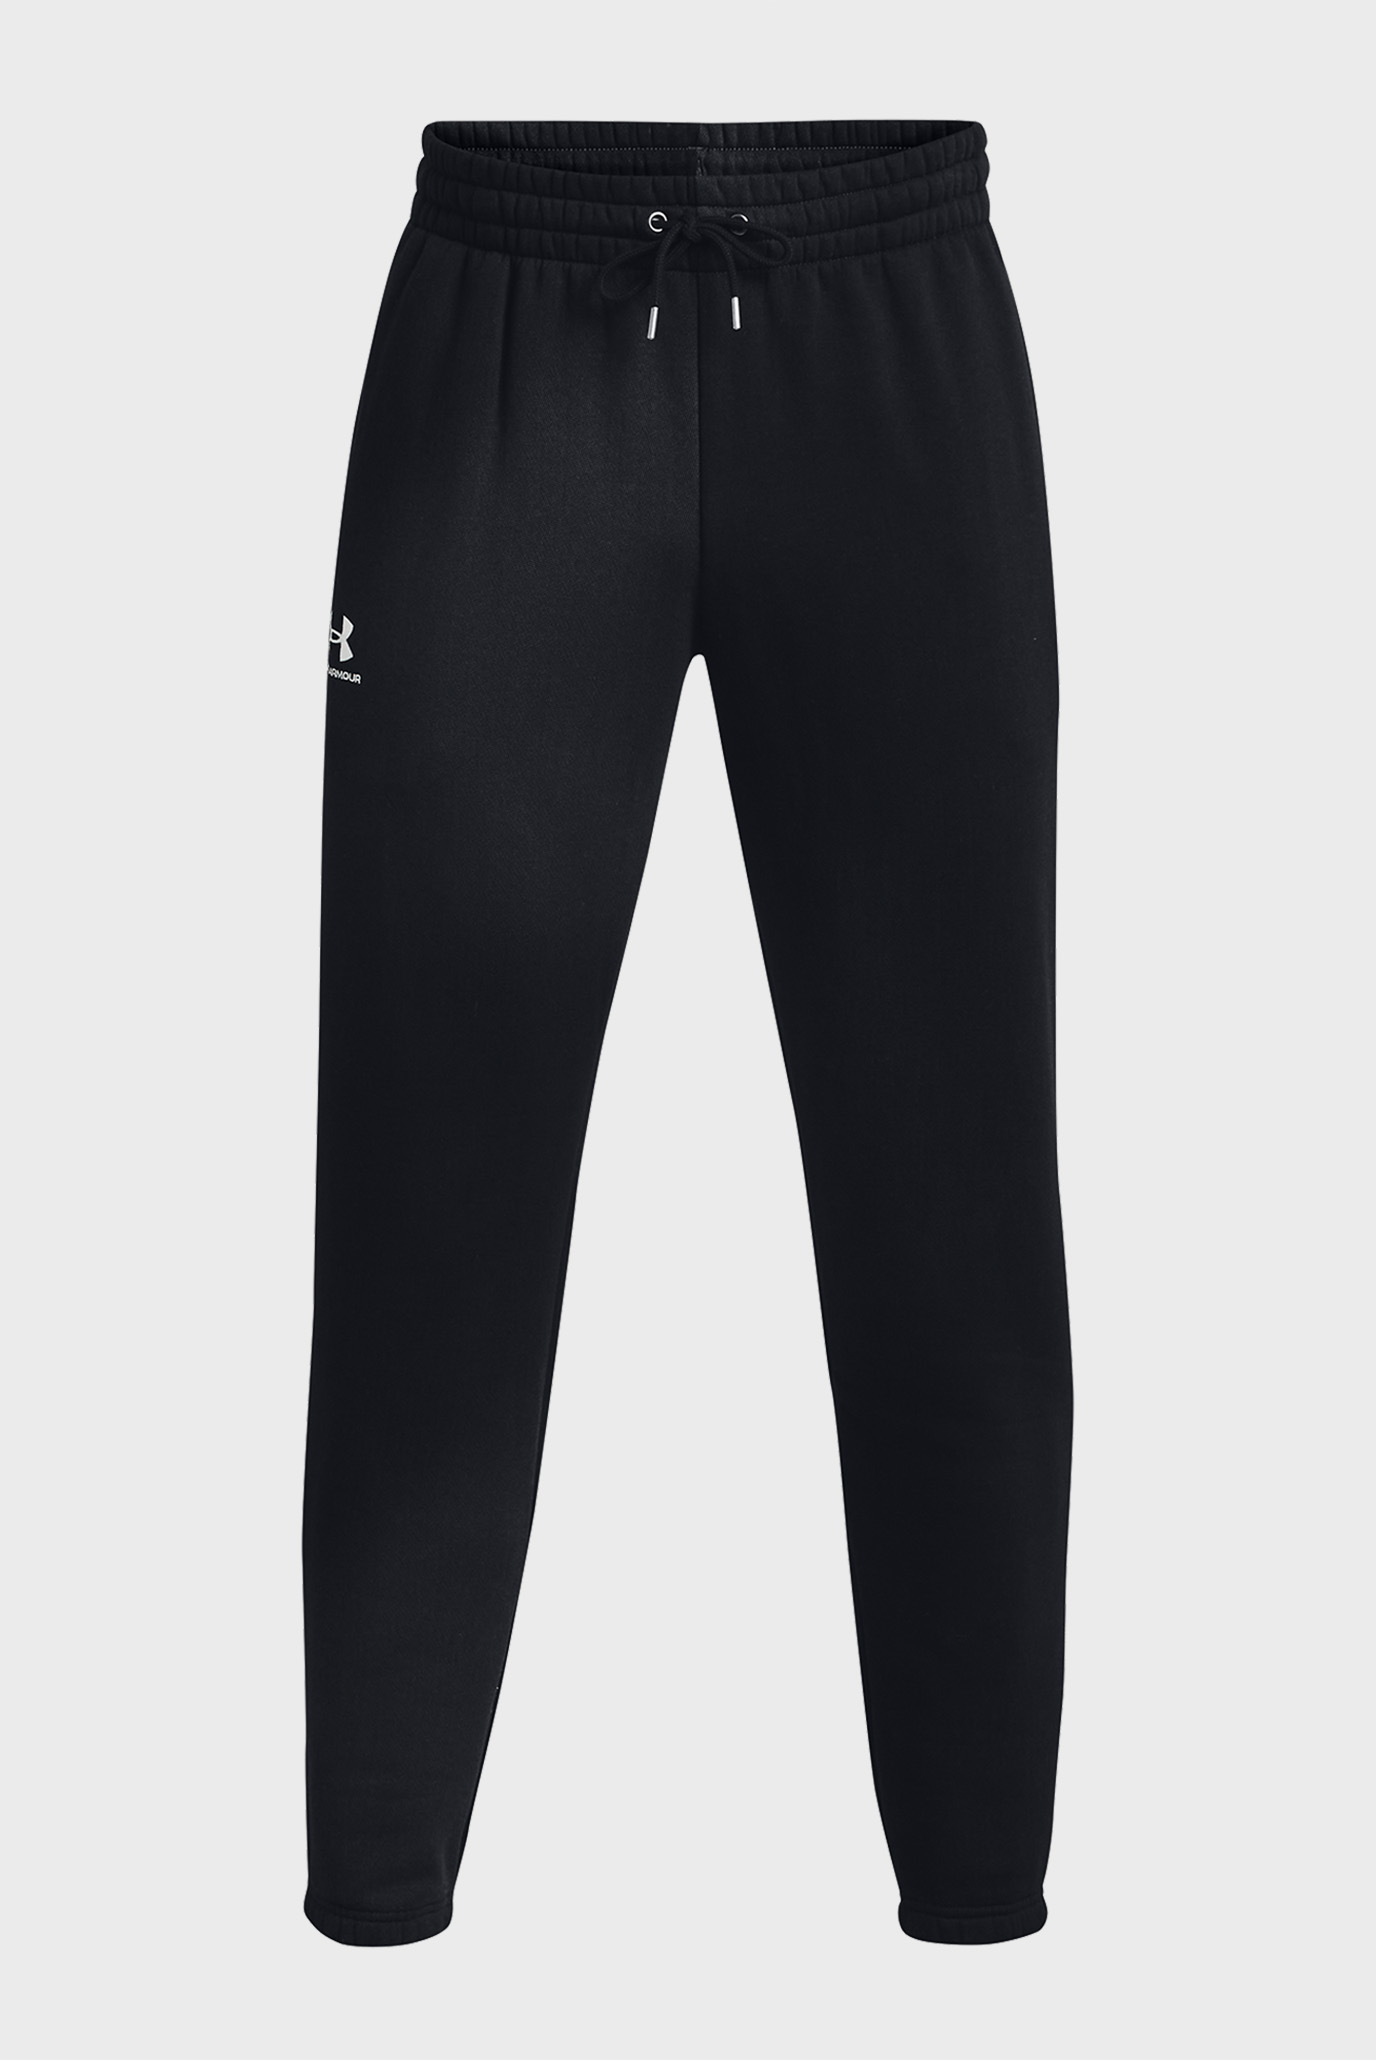 Мужские черные спортивные брюки UA Essential Flc Novelty Jgr 1